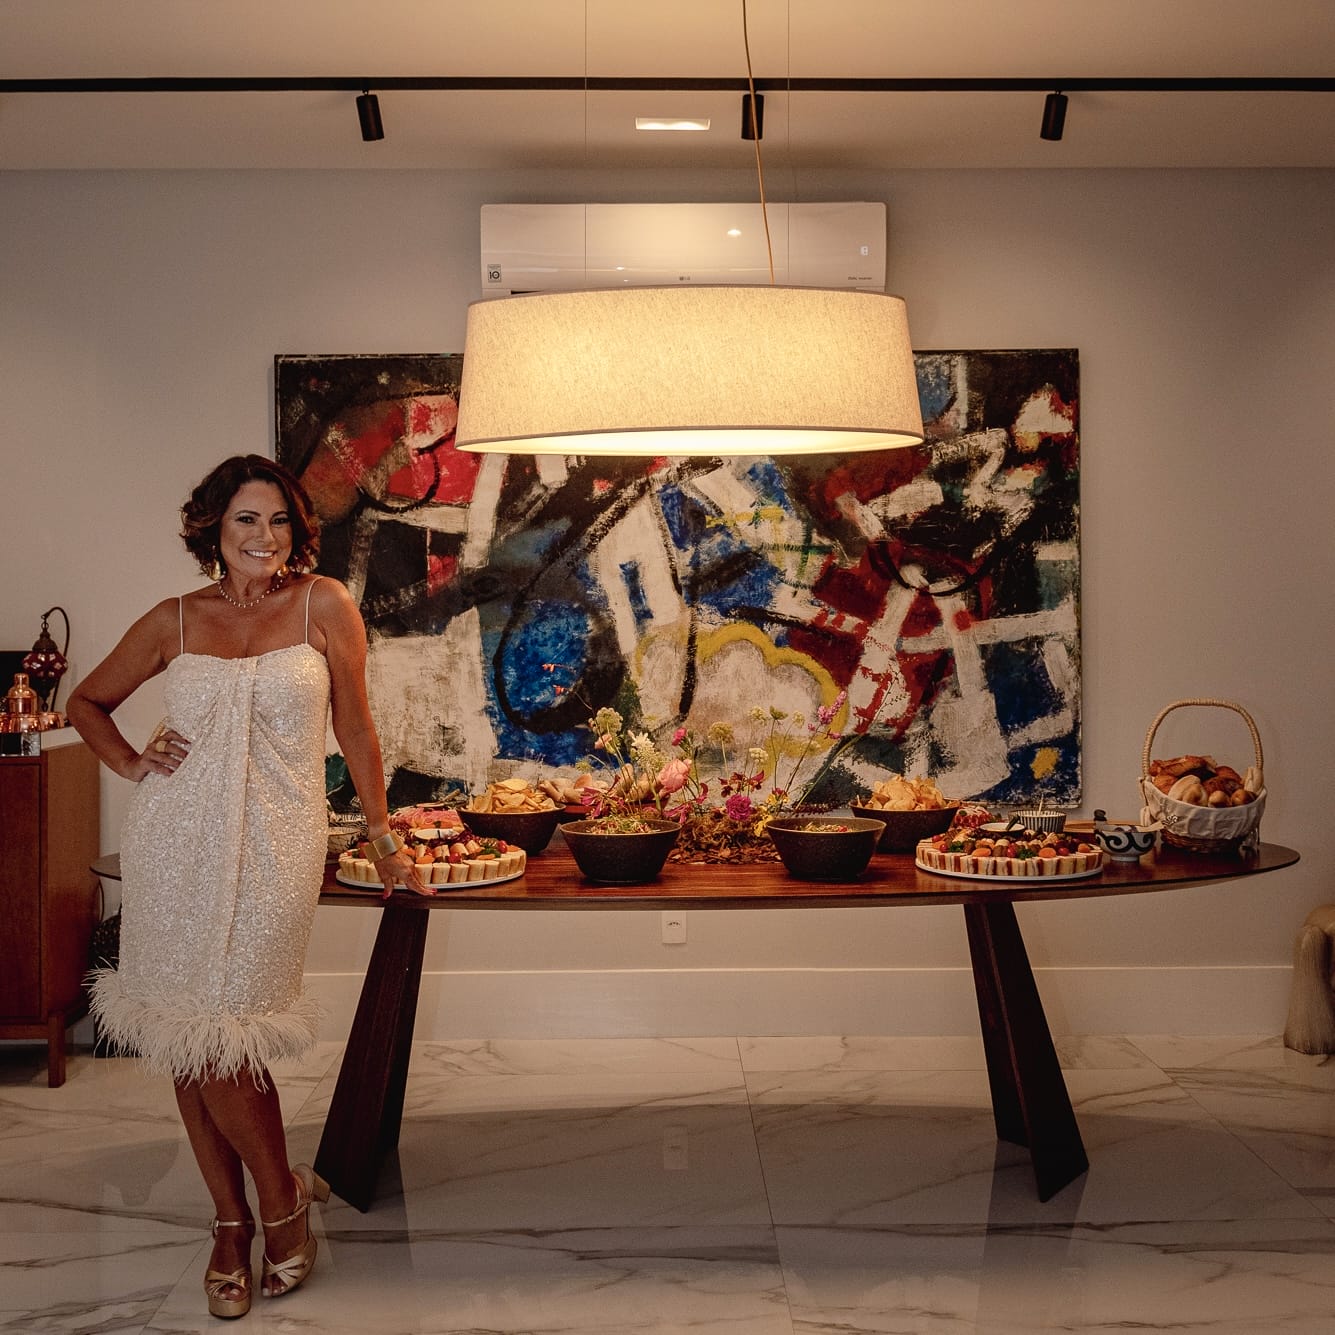 Festa da jornalista Renata Araújo: buffet do Malta e DJ Thiago Mourão